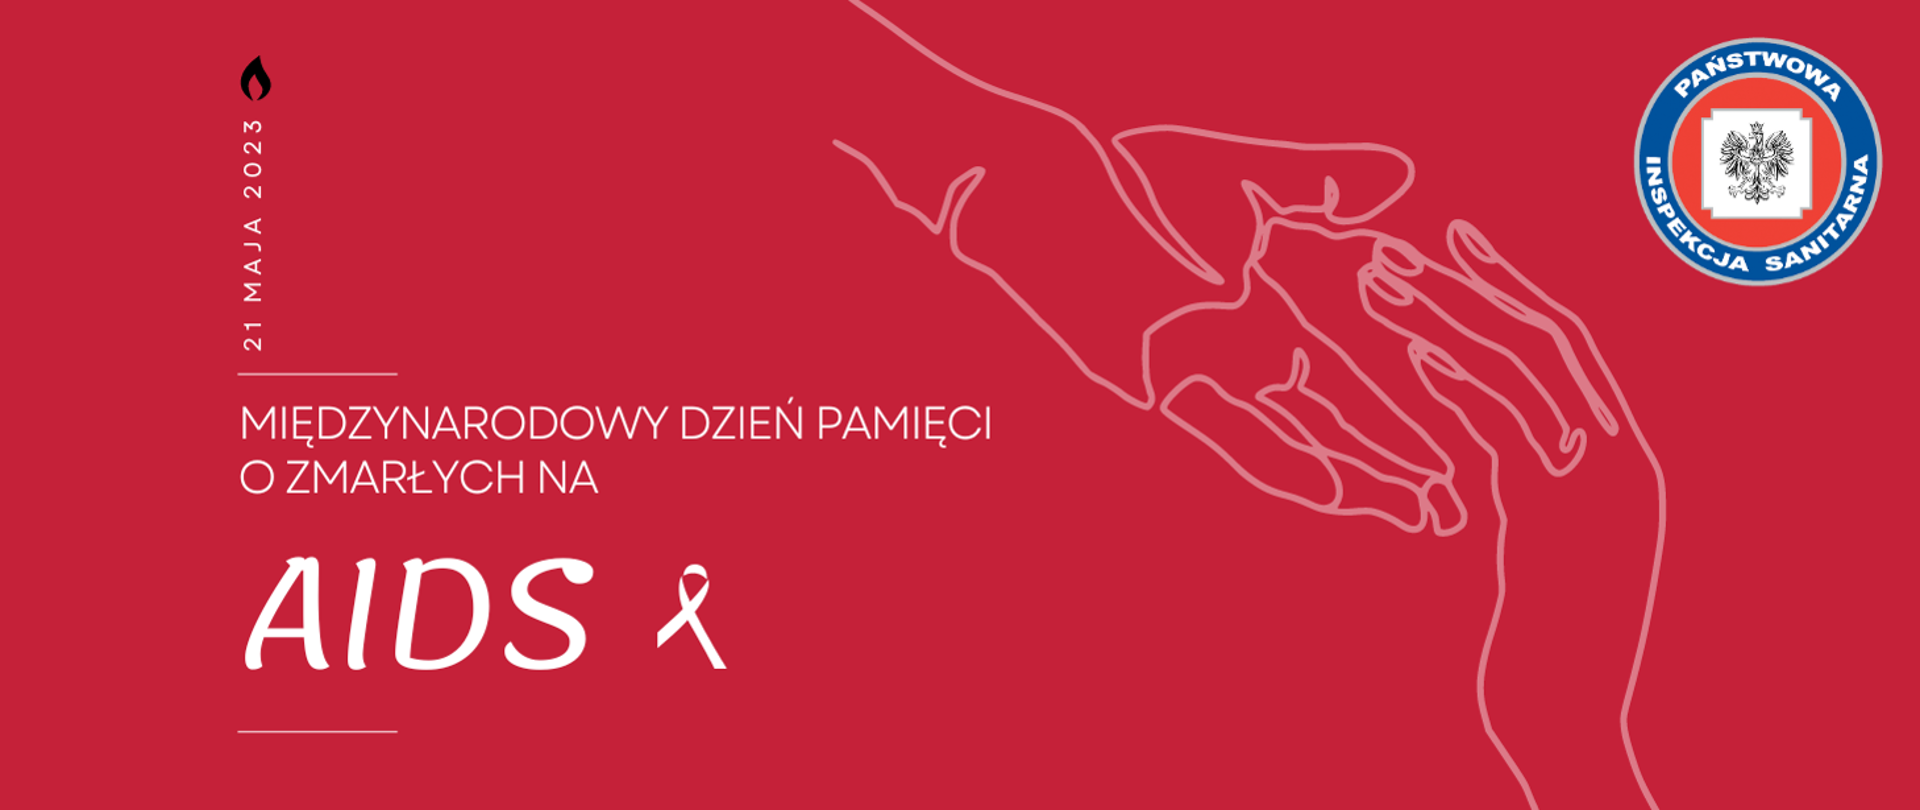 Plakat z napisem Międzynarodowy Dzień Pamięci o Zmarłych na AIDS. Na czerwonym tle biały napis, znak AIDS z wstążeczką i szkic dłoni dotykających się w geście pomocy.